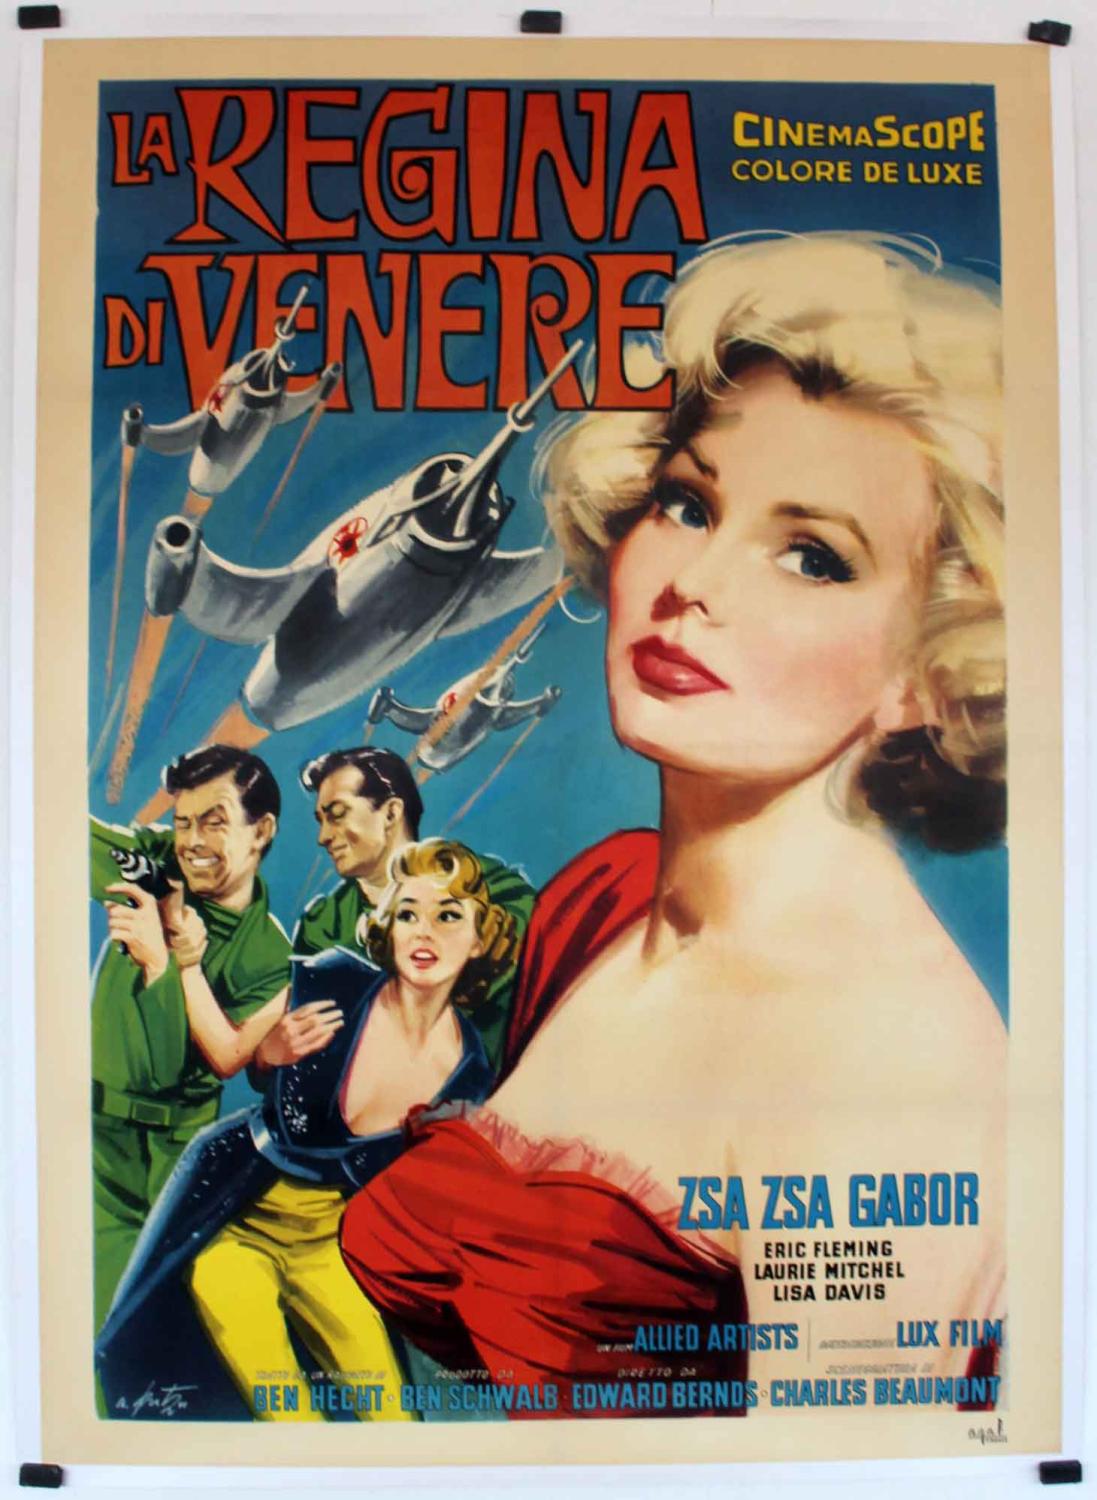 LA REGINA DI VENERE - 1958Dir EDWARDS BERNDSCast: ZSA ZSA GABORERIC ...